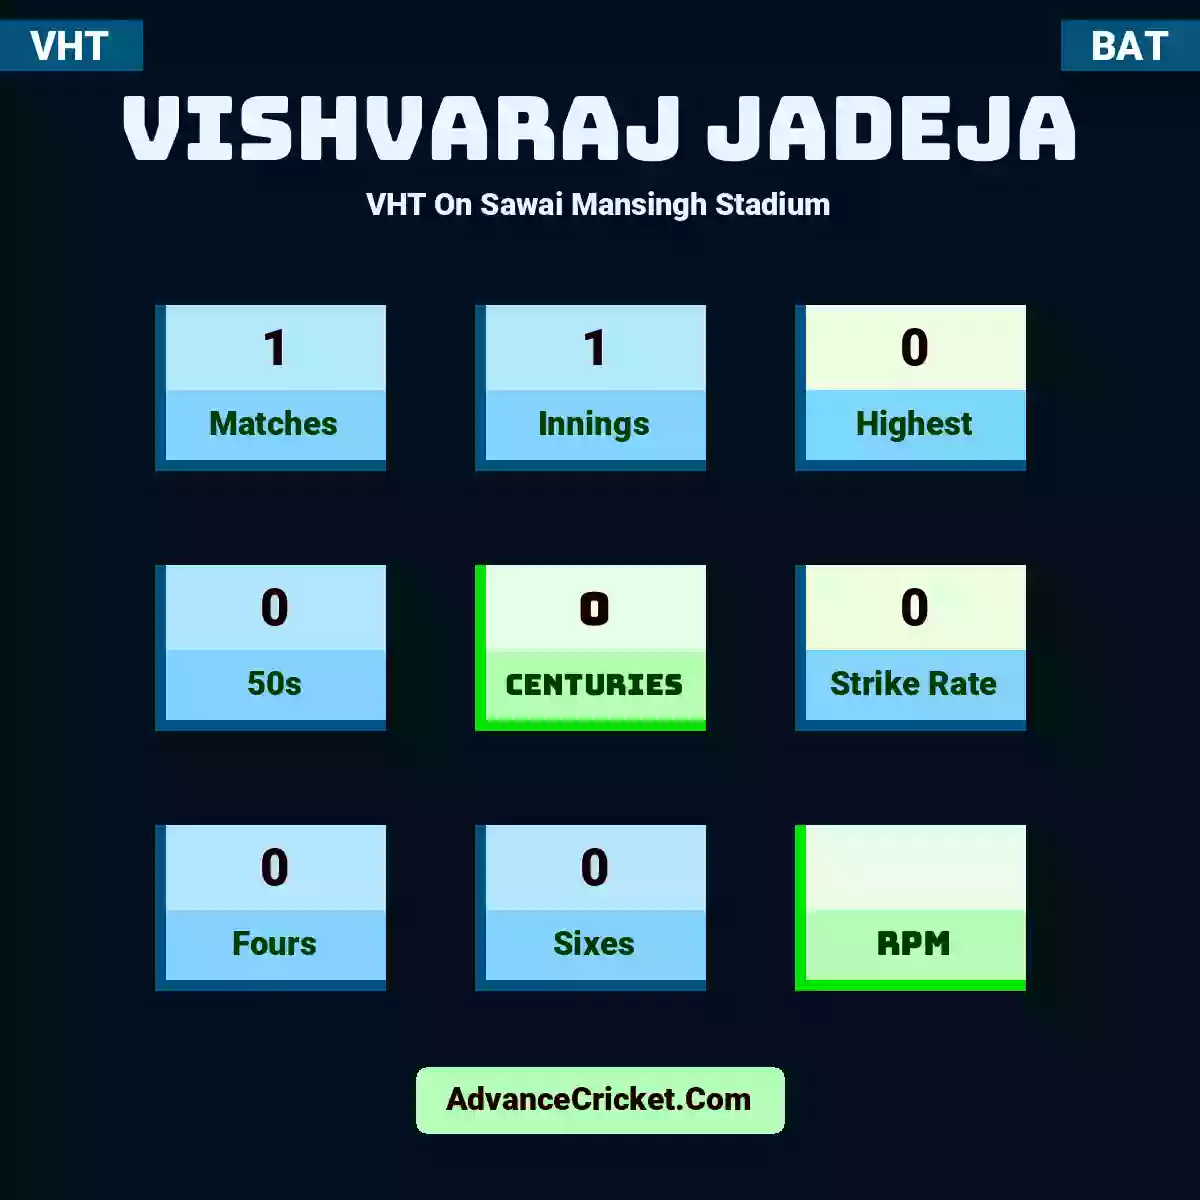 Vishvaraj Jadeja VHT  On Sawai Mansingh Stadium, Vishvaraj Jadeja played 1 matches, scored 0 runs as highest, 0 half-centuries, and 0 centuries, with a strike rate of 0. V.Jadeja hit 0 fours and 0 sixes.